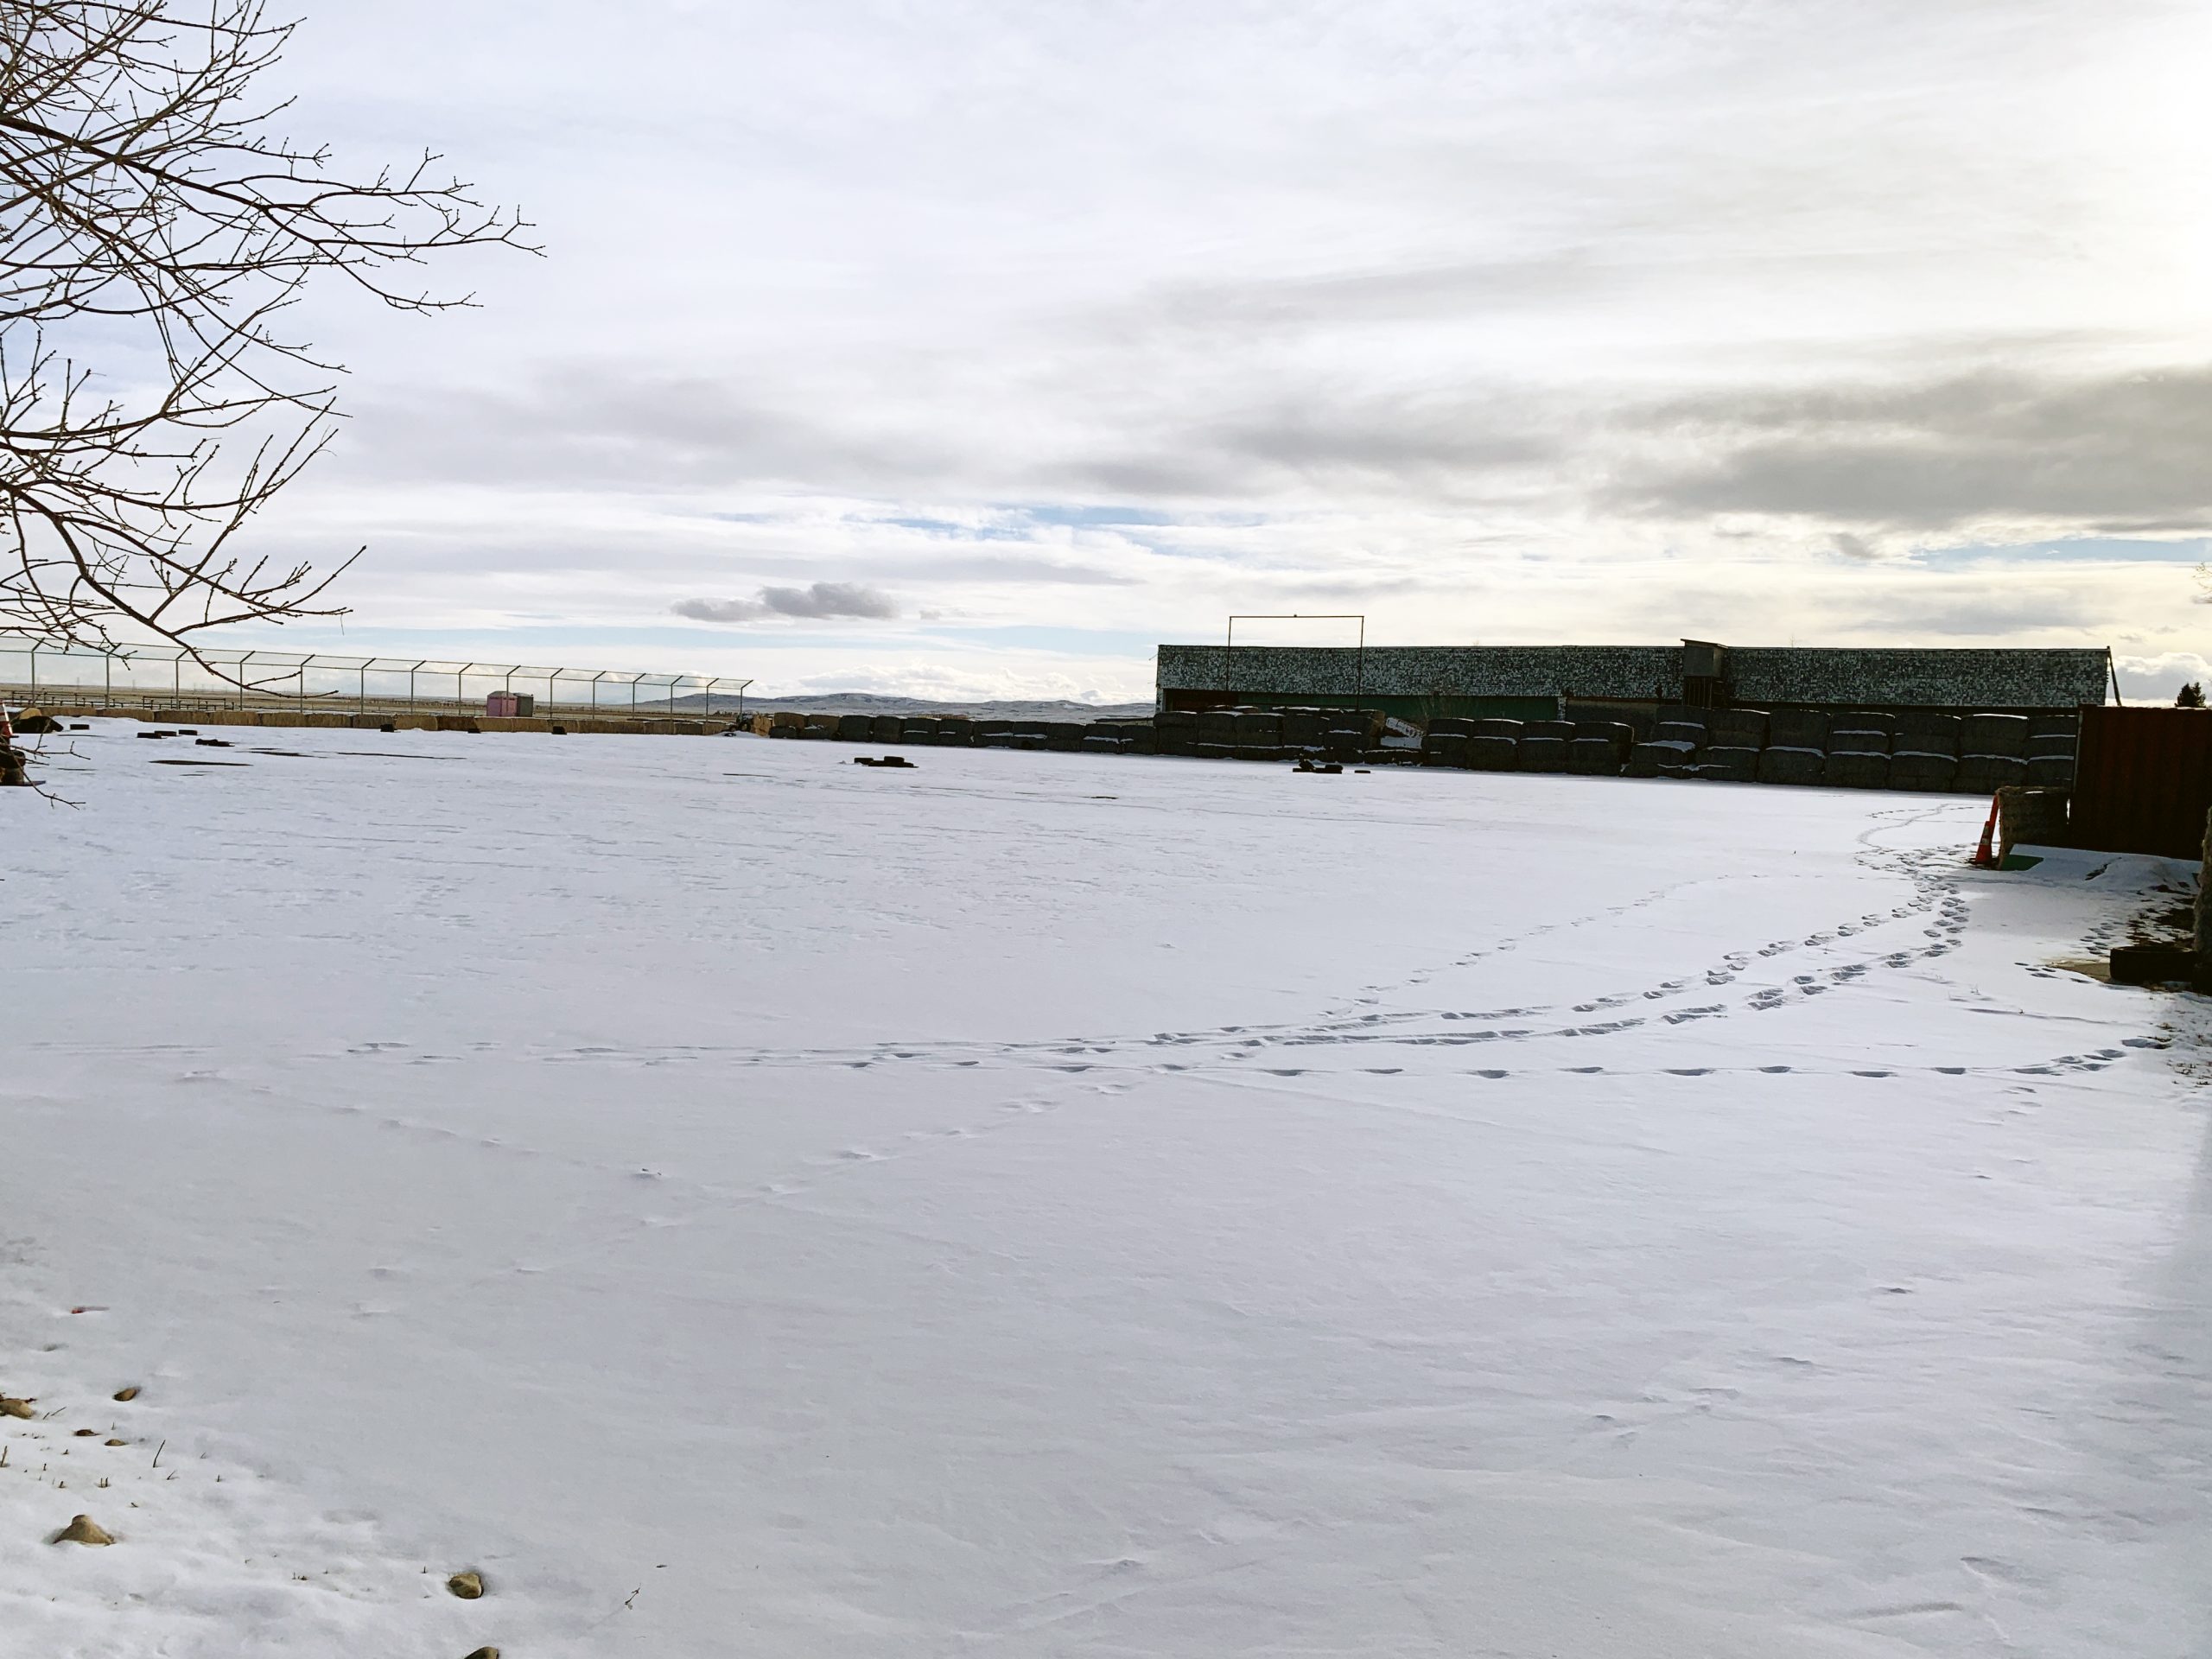 Terrain de parade avec de la neige au sol